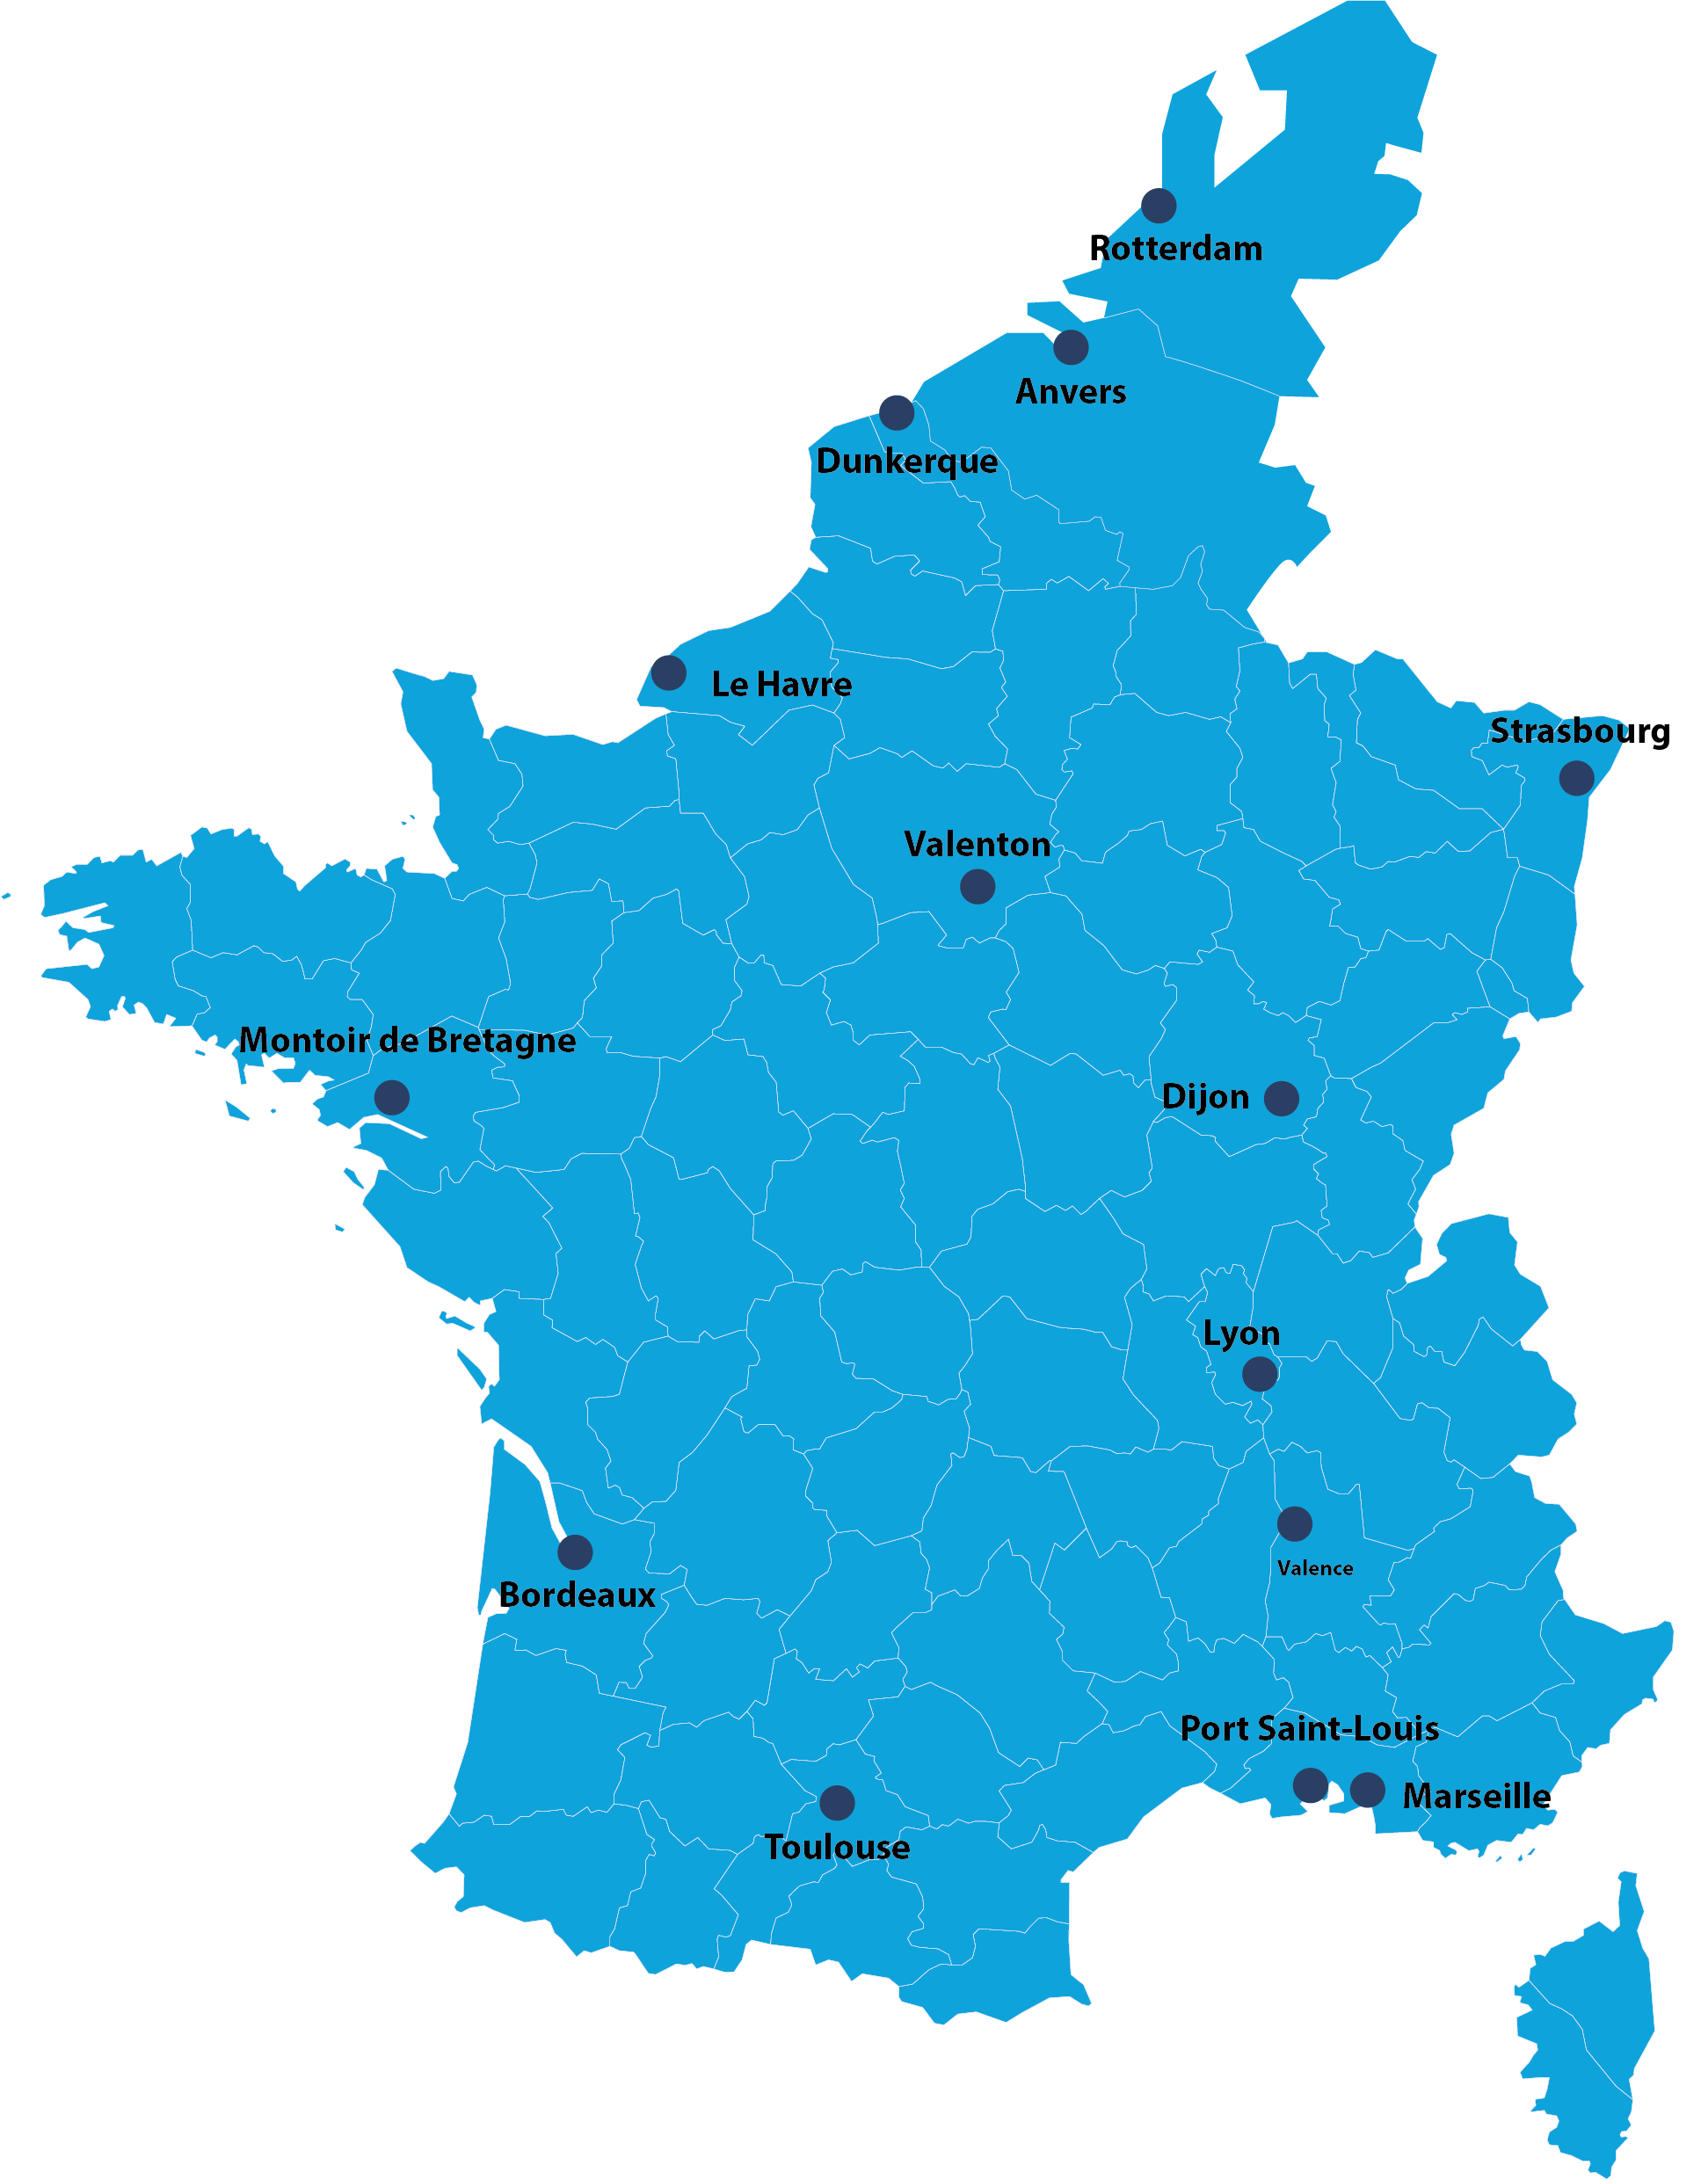 Carte de la France bleue avec des points sur les villes avec un dépôt Eurobox